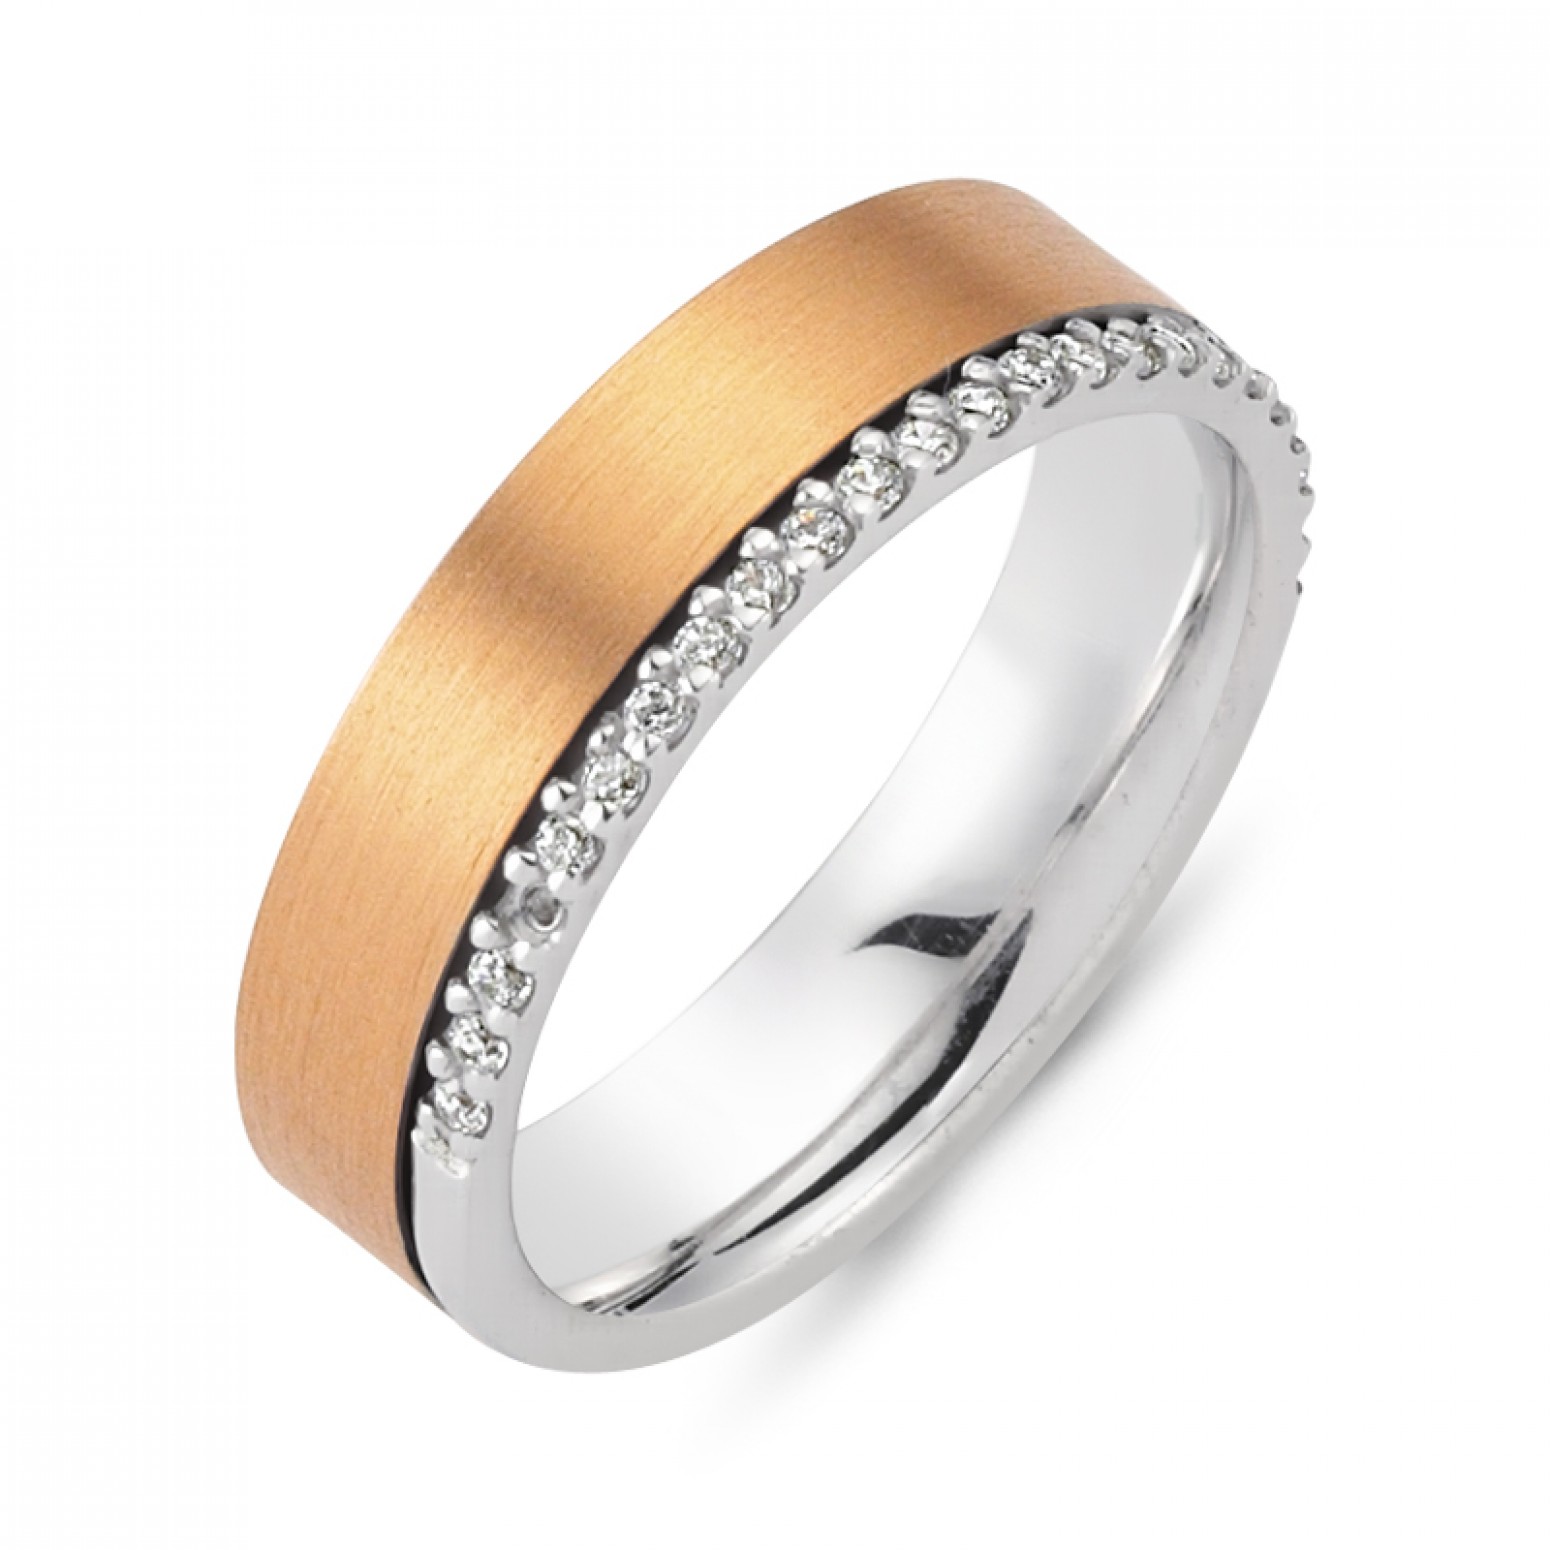 Chrilia wedding rings in white & pink gold, K14, pair da2804 WEDDING RINGS Κοσμηματα - chrilia.gr